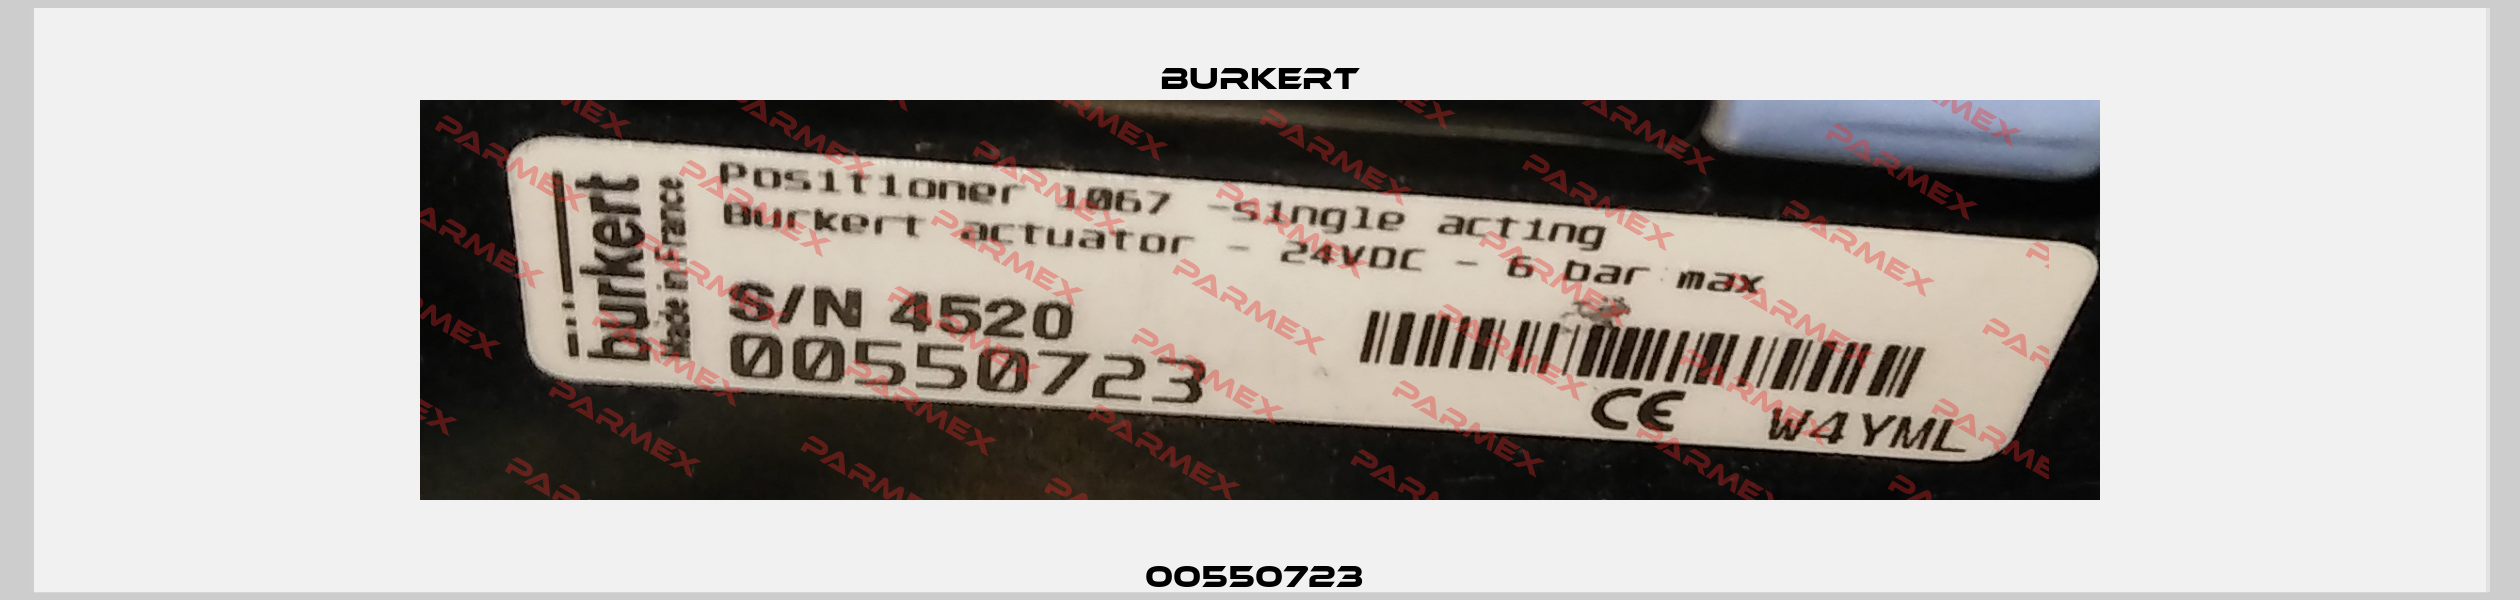 00550723  Burkert